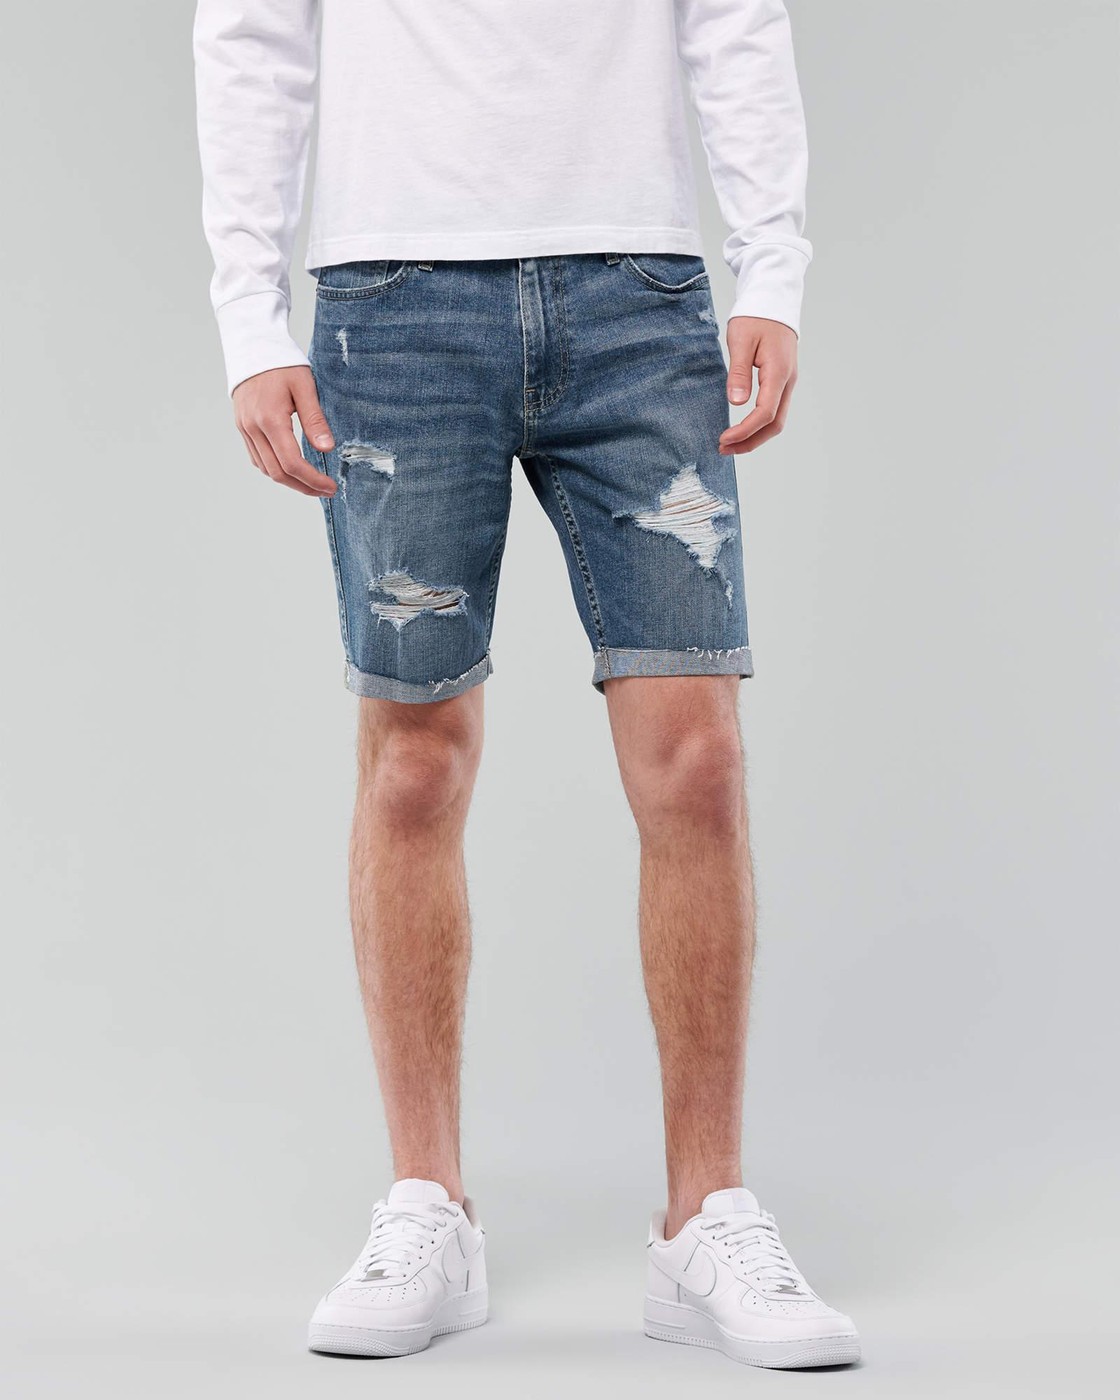 Шорты мужские - джинсовые шорты Hollister